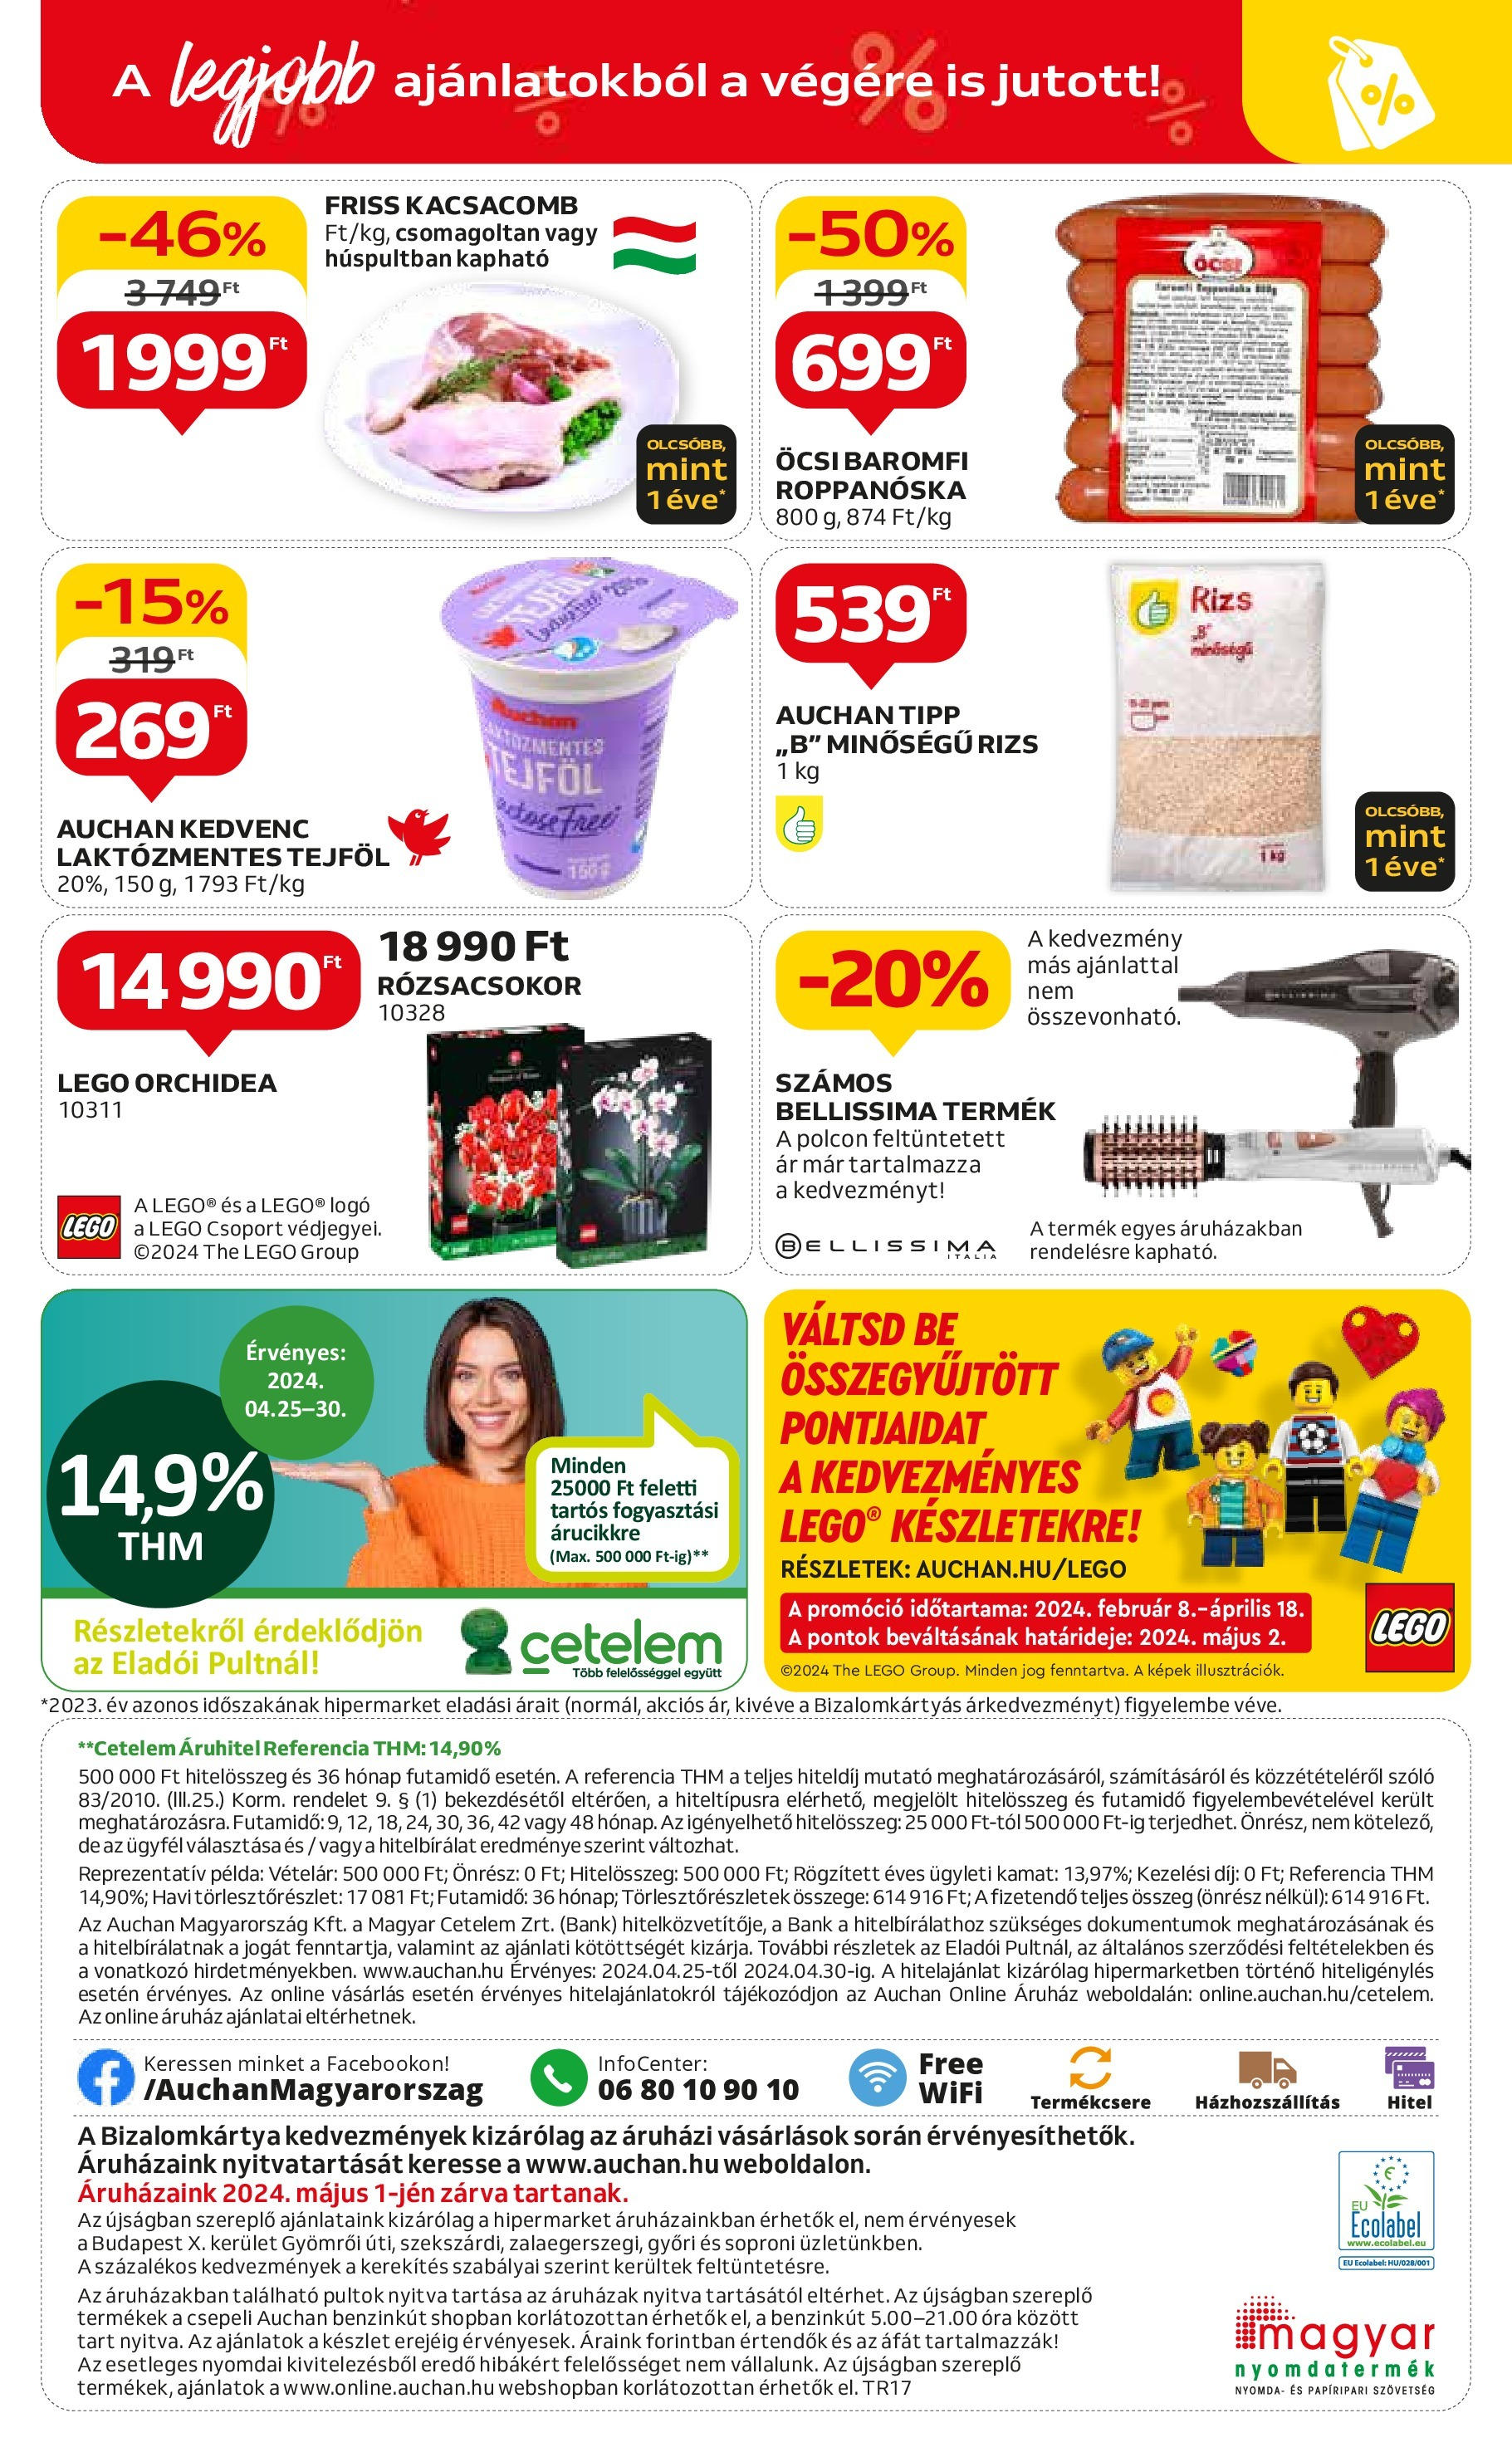 Auchan  Akciós újság - 2024.04.25. -tól/töl > akció, szórólap 🛍️ | Oldal: 48 | Termékek: Szőlő, Kacsacomb, Rizs, Óra